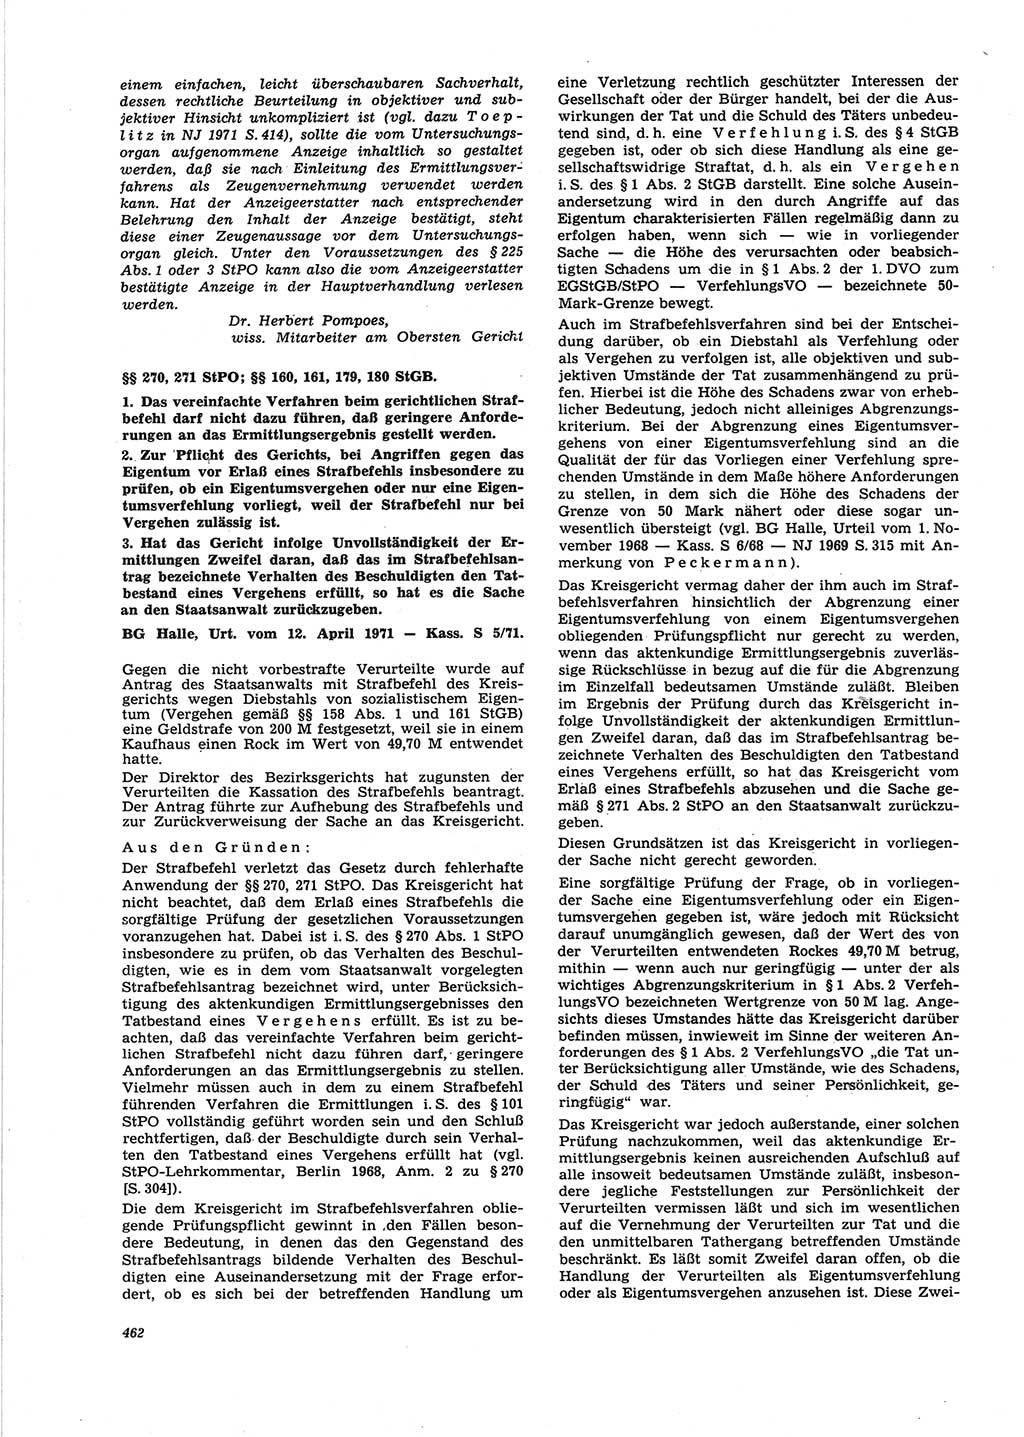 Neue Justiz (NJ), Zeitschrift für Recht und Rechtswissenschaft [Deutsche Demokratische Republik (DDR)], 25. Jahrgang 1971, Seite 462 (NJ DDR 1971, S. 462)